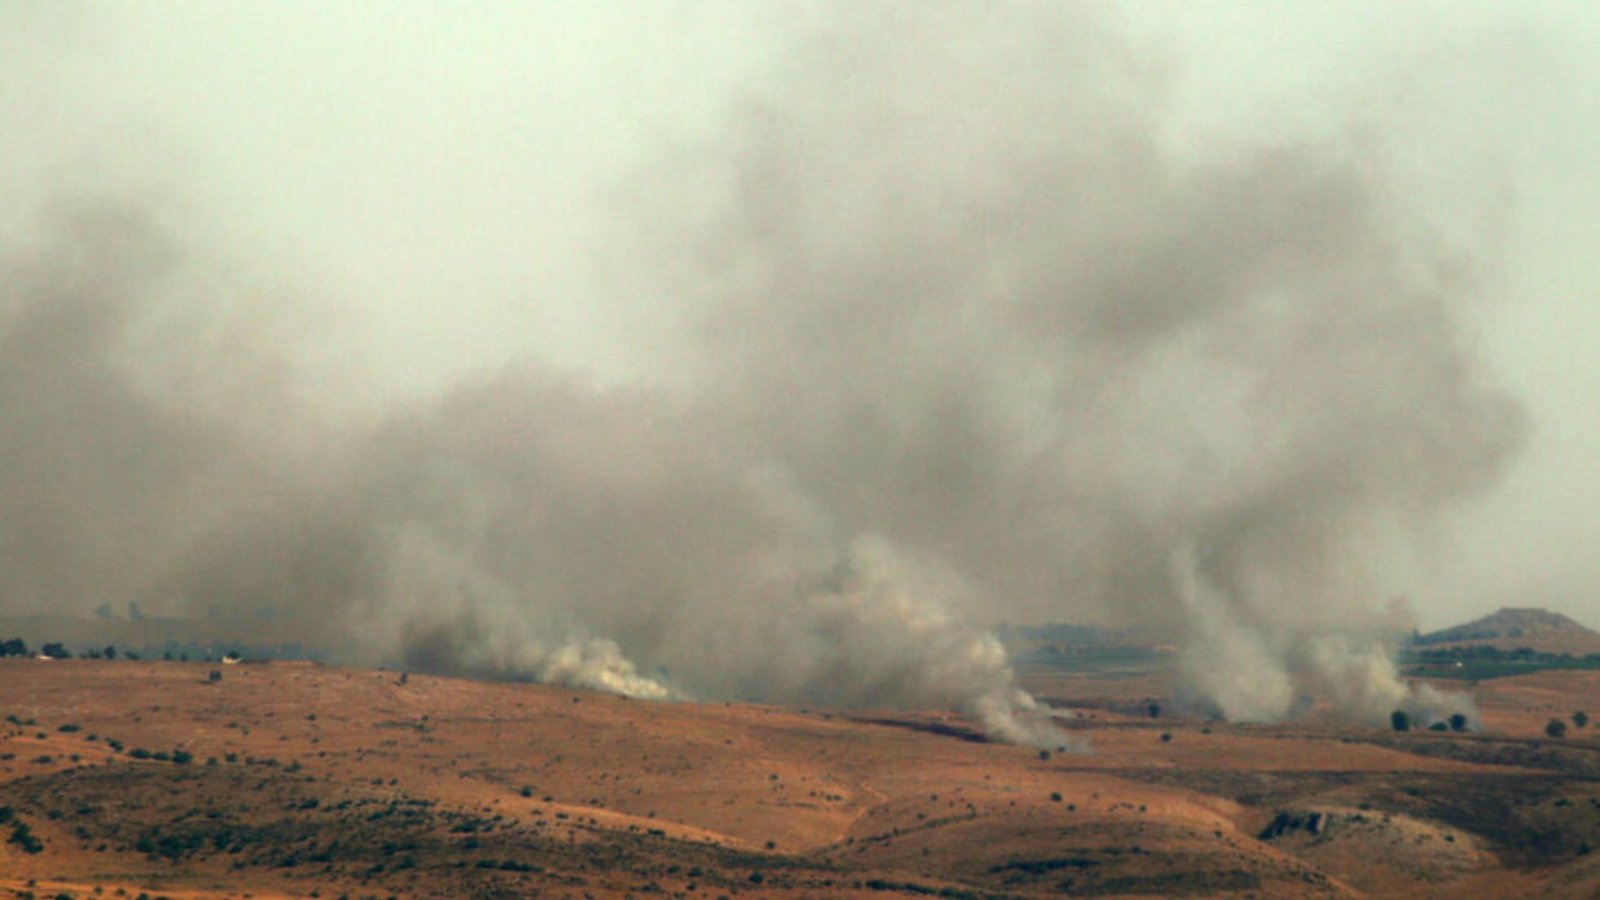 صورة التقطت من منطقة مرجعيون في جنوب لبنان في الثالث من تموز (يوليو) 2024 تظهر دخانا يتصاعد من موقع عسكري اسرائيلي في الجولان السوري بعد قصفه من جانب حزب الله 